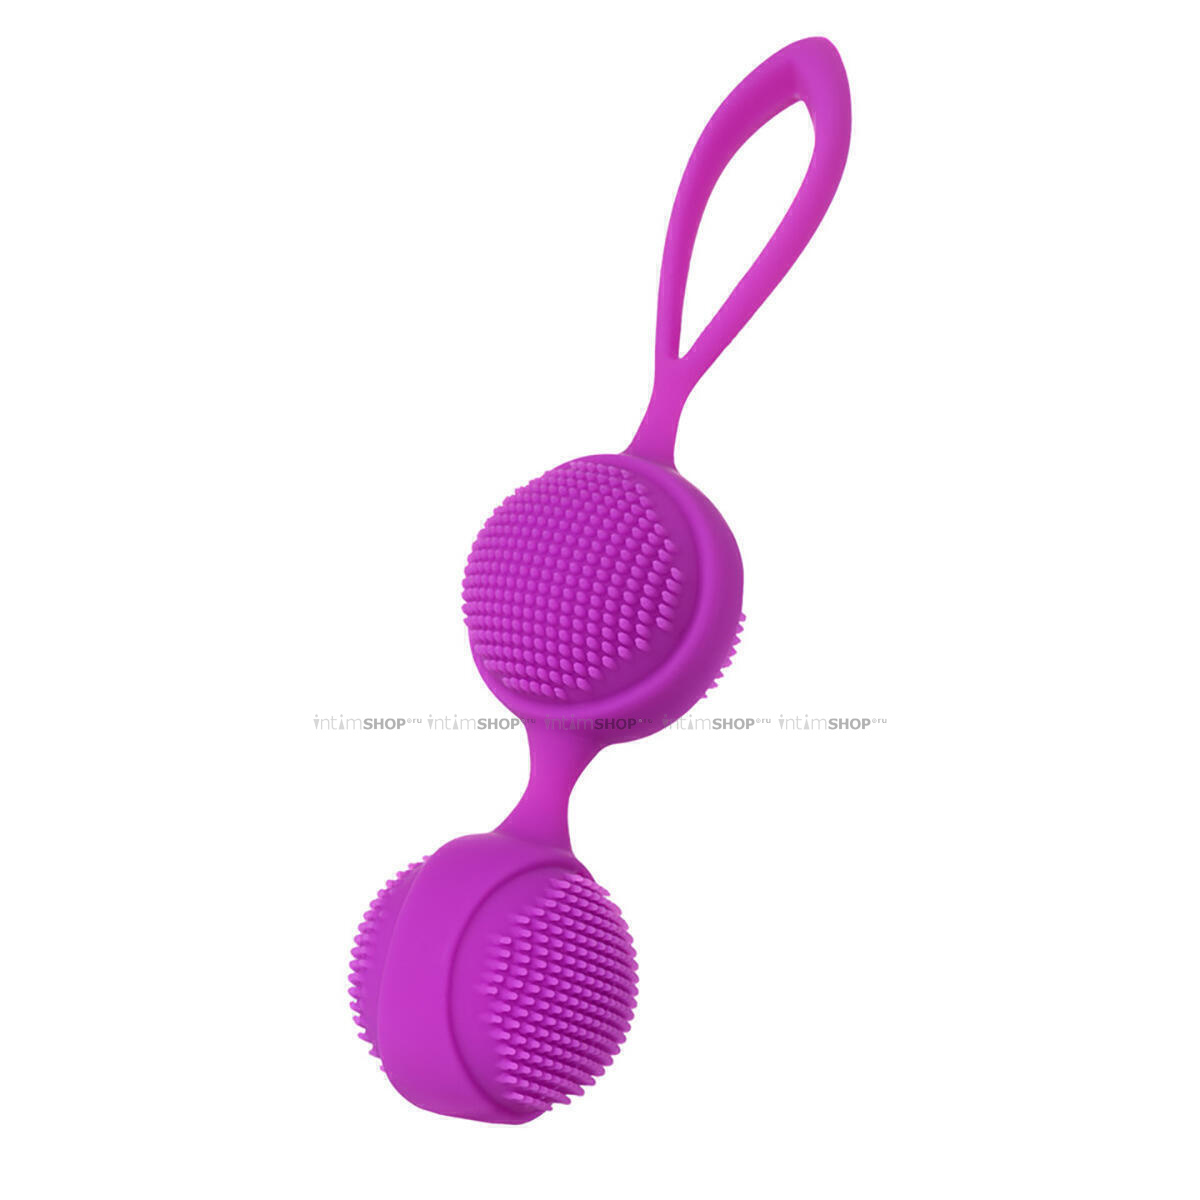 Вагинальные шарики с ресничками JOS NUBY, фиолетовые